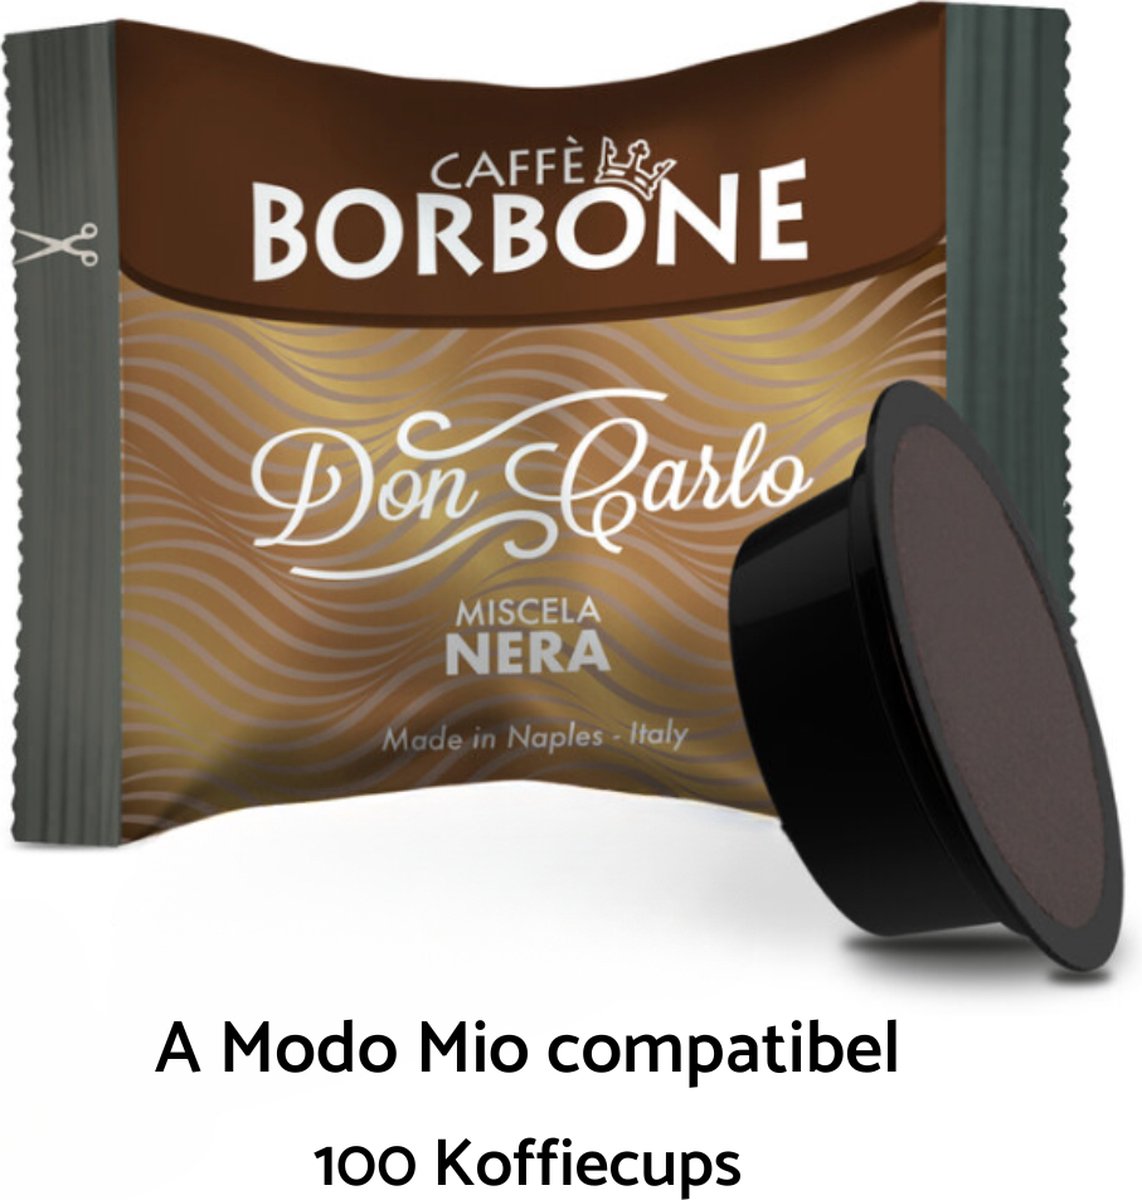 Caffè Borbone - Don Carlo Nera 100 Koffiecups - Lavazza a Modo Mio compatibel